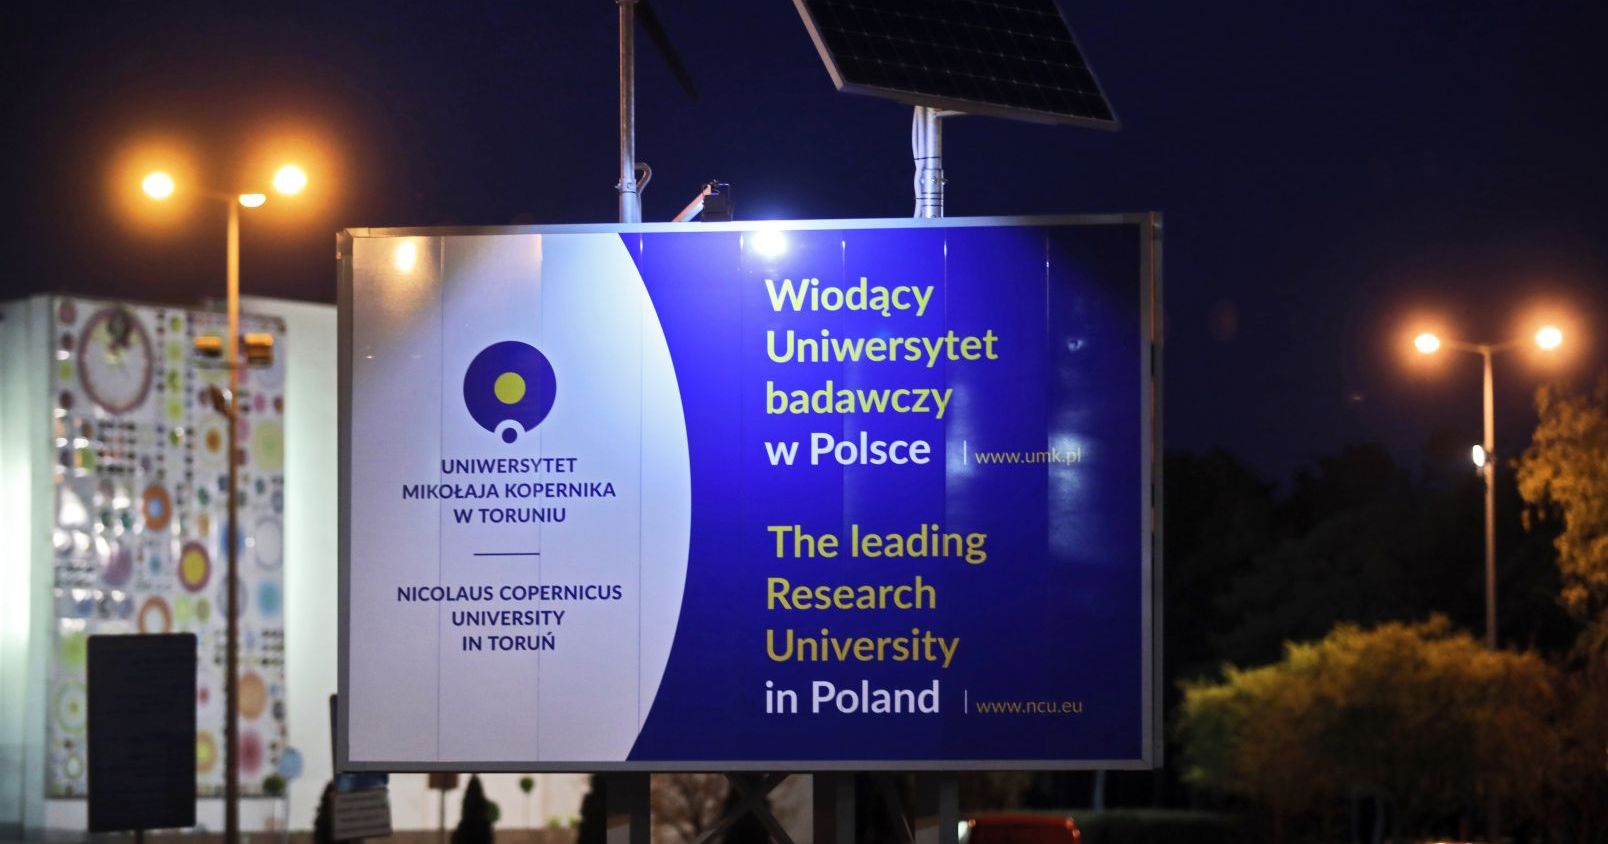  Tablica informacyjna z logo Uniwersytetu i napisem "Wiodący Uniwersytet badawczy w Polsce", w tle widać Aulę UMK